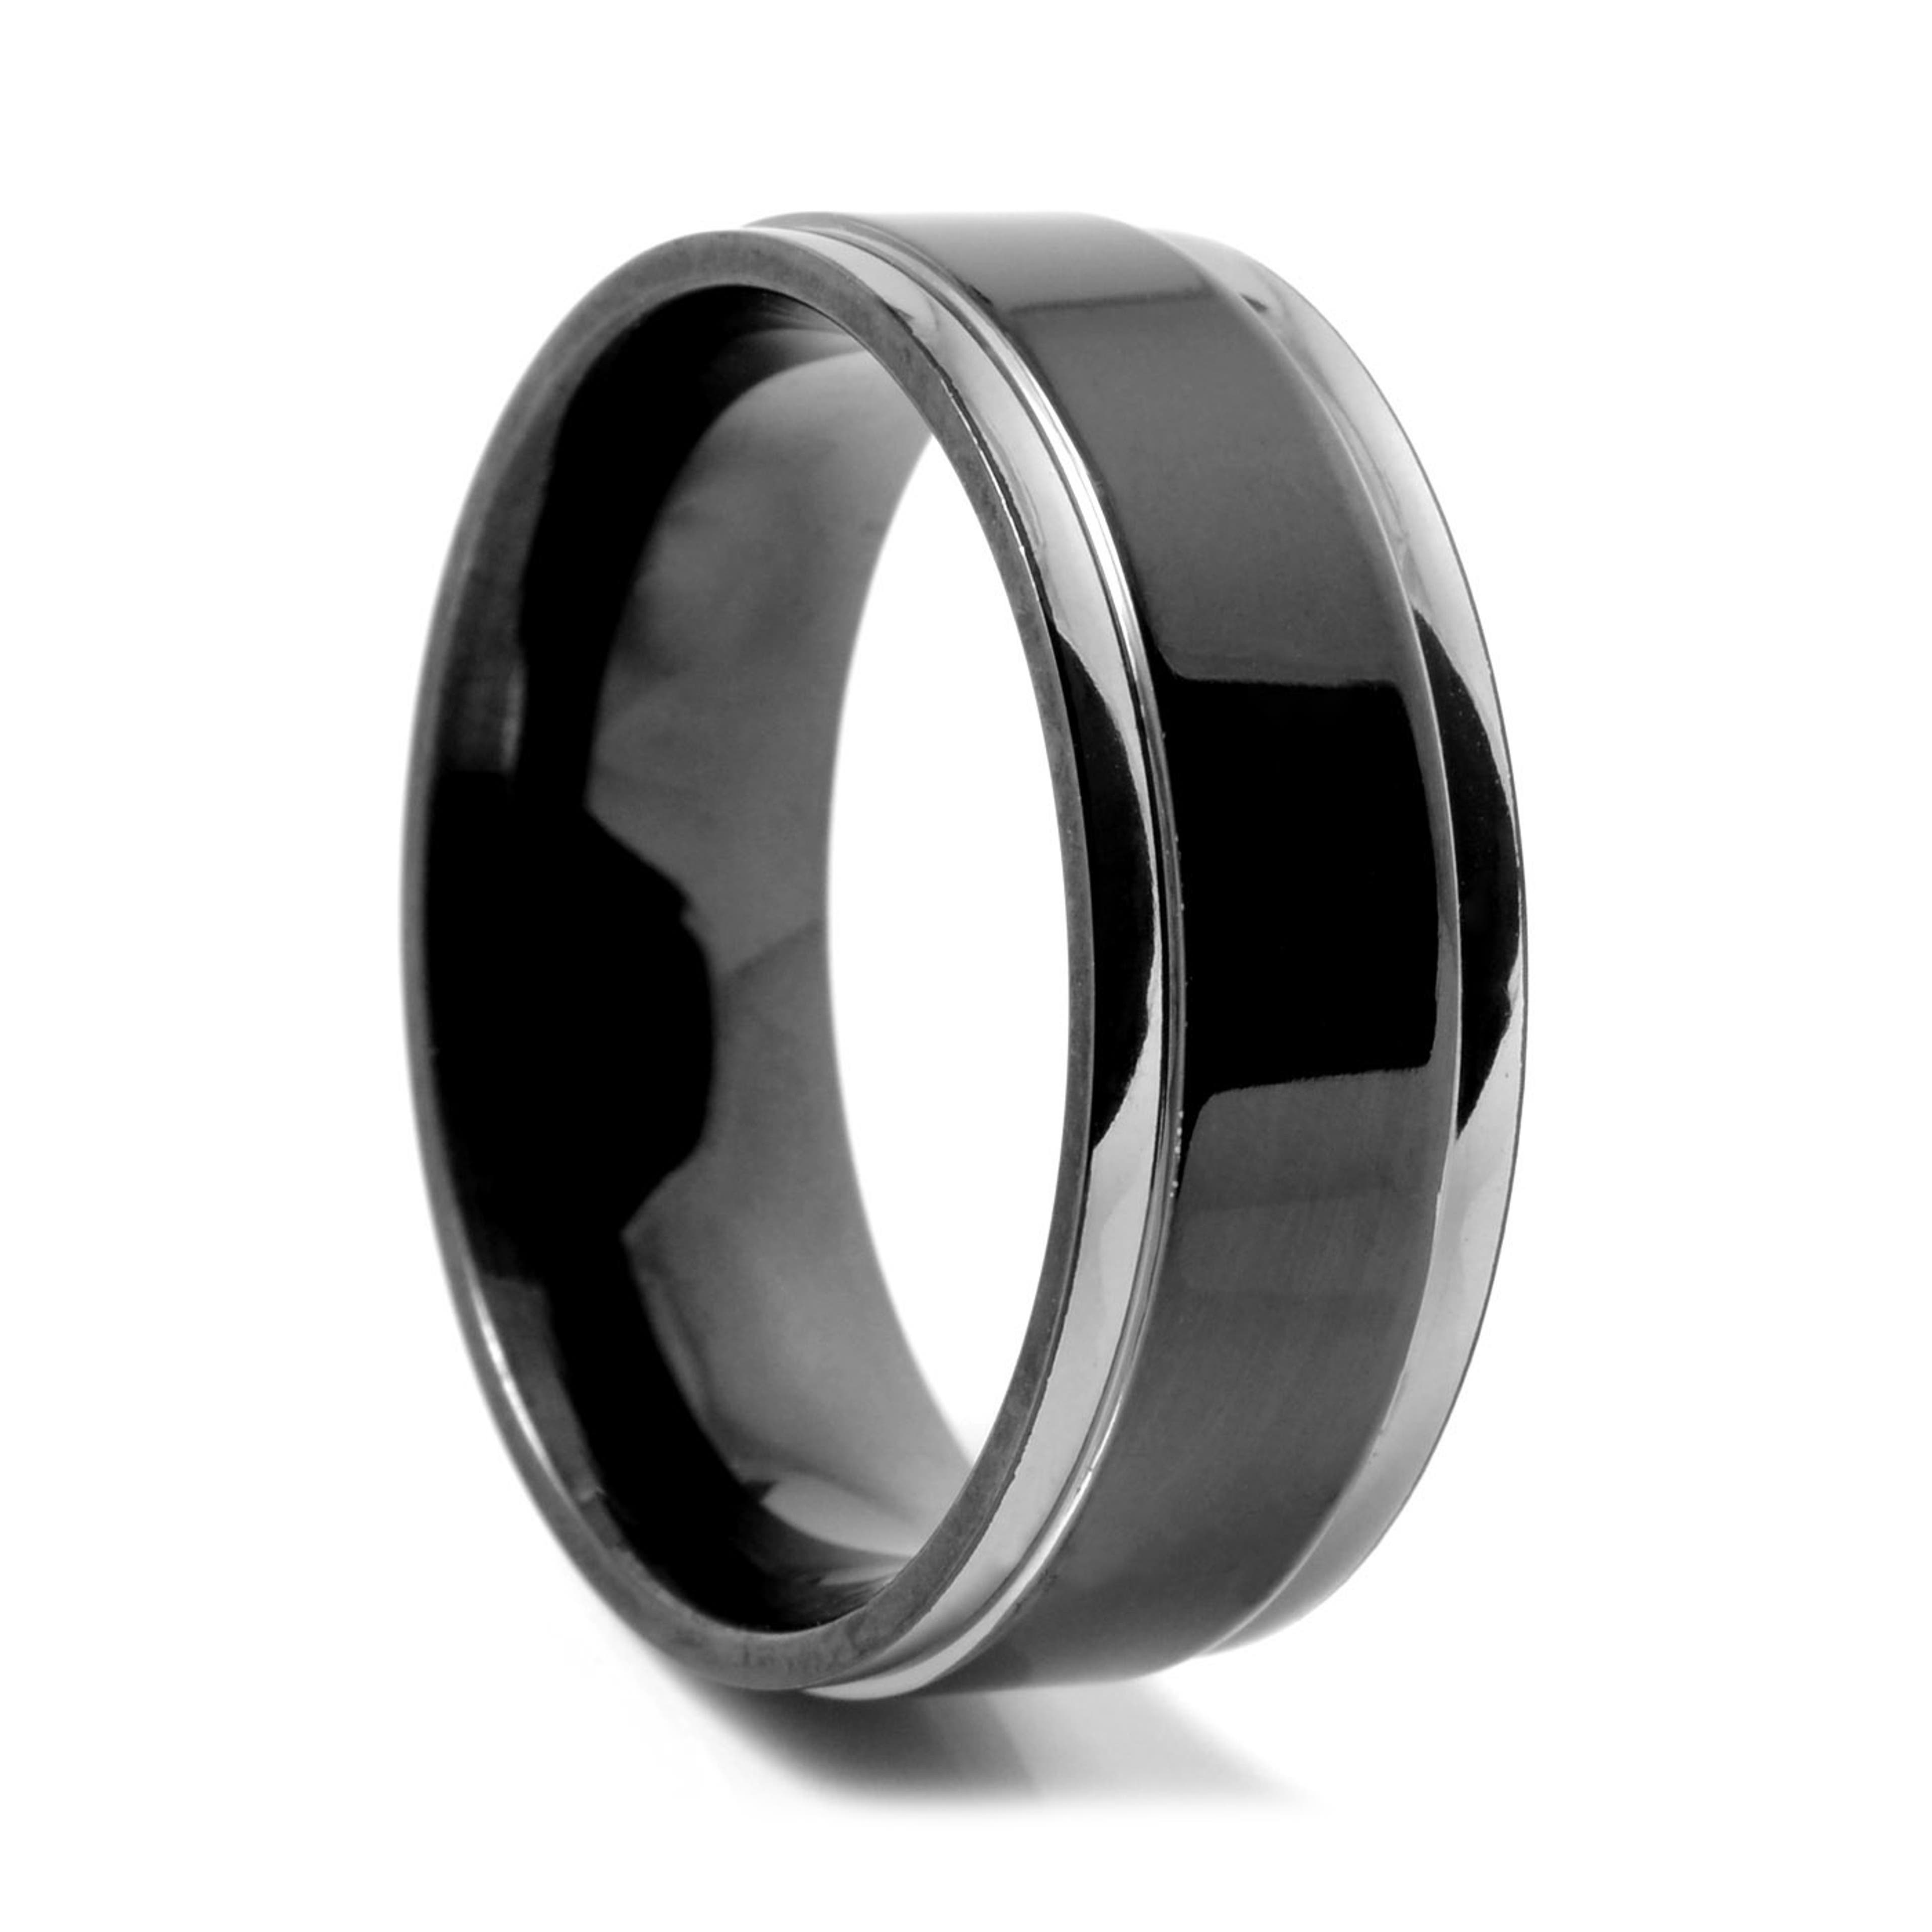 8 mm Black & Silver-Tone Titanium Ring